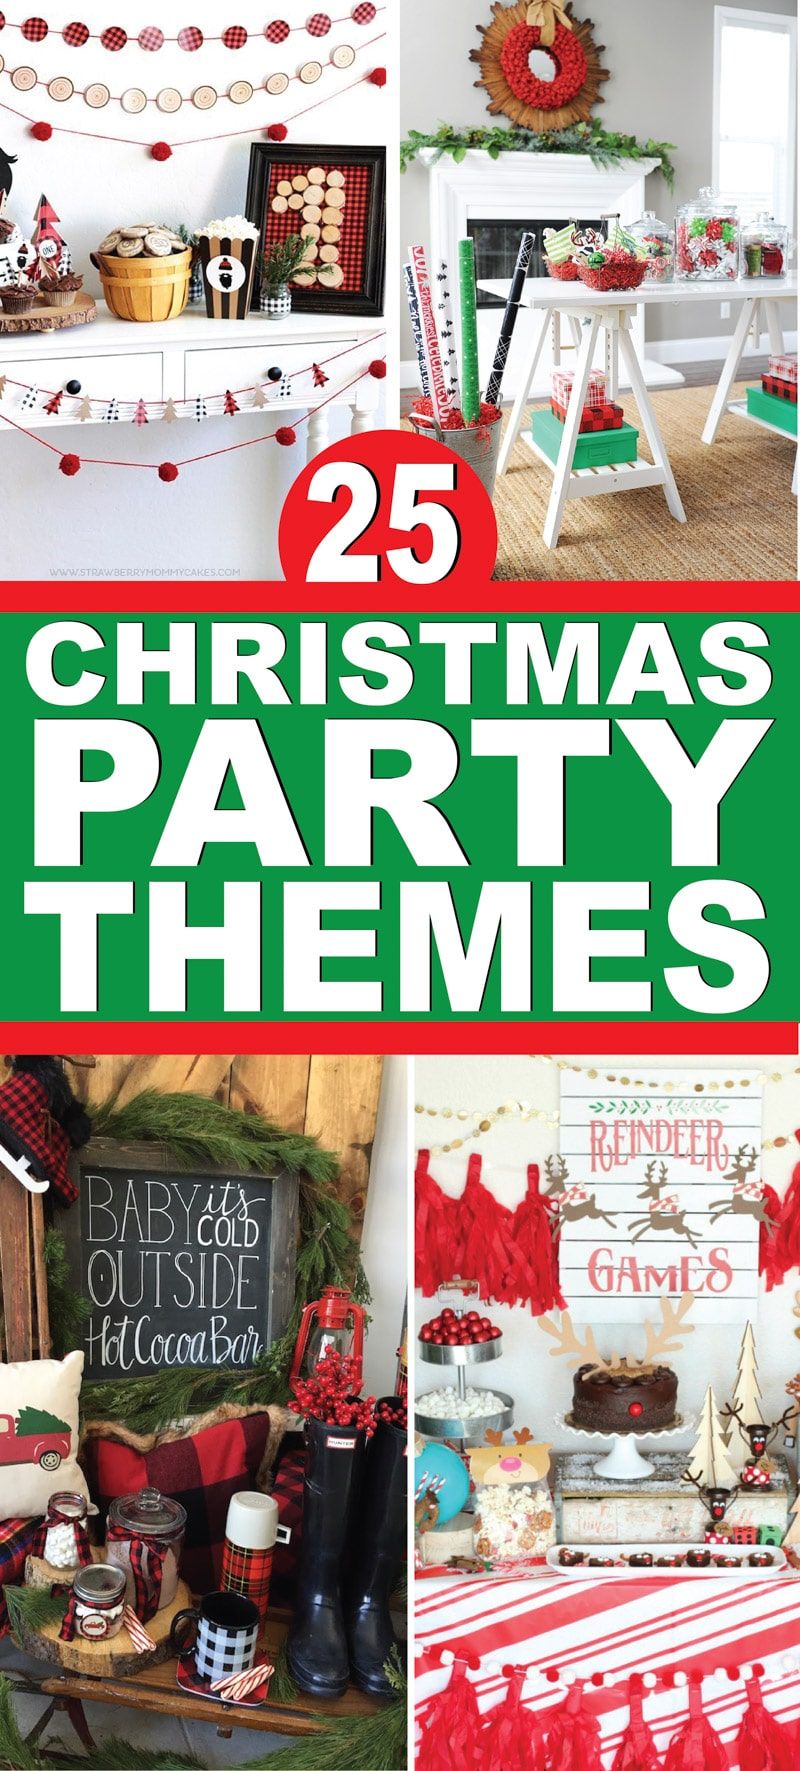 25 بہترین کرسمس پارٹی تھیمز! بڑوں ، بچوں کے لئے ، اور پورے خاندان کے لئے پارٹی تھیمز کے لئے زبردست آئیڈیاز!